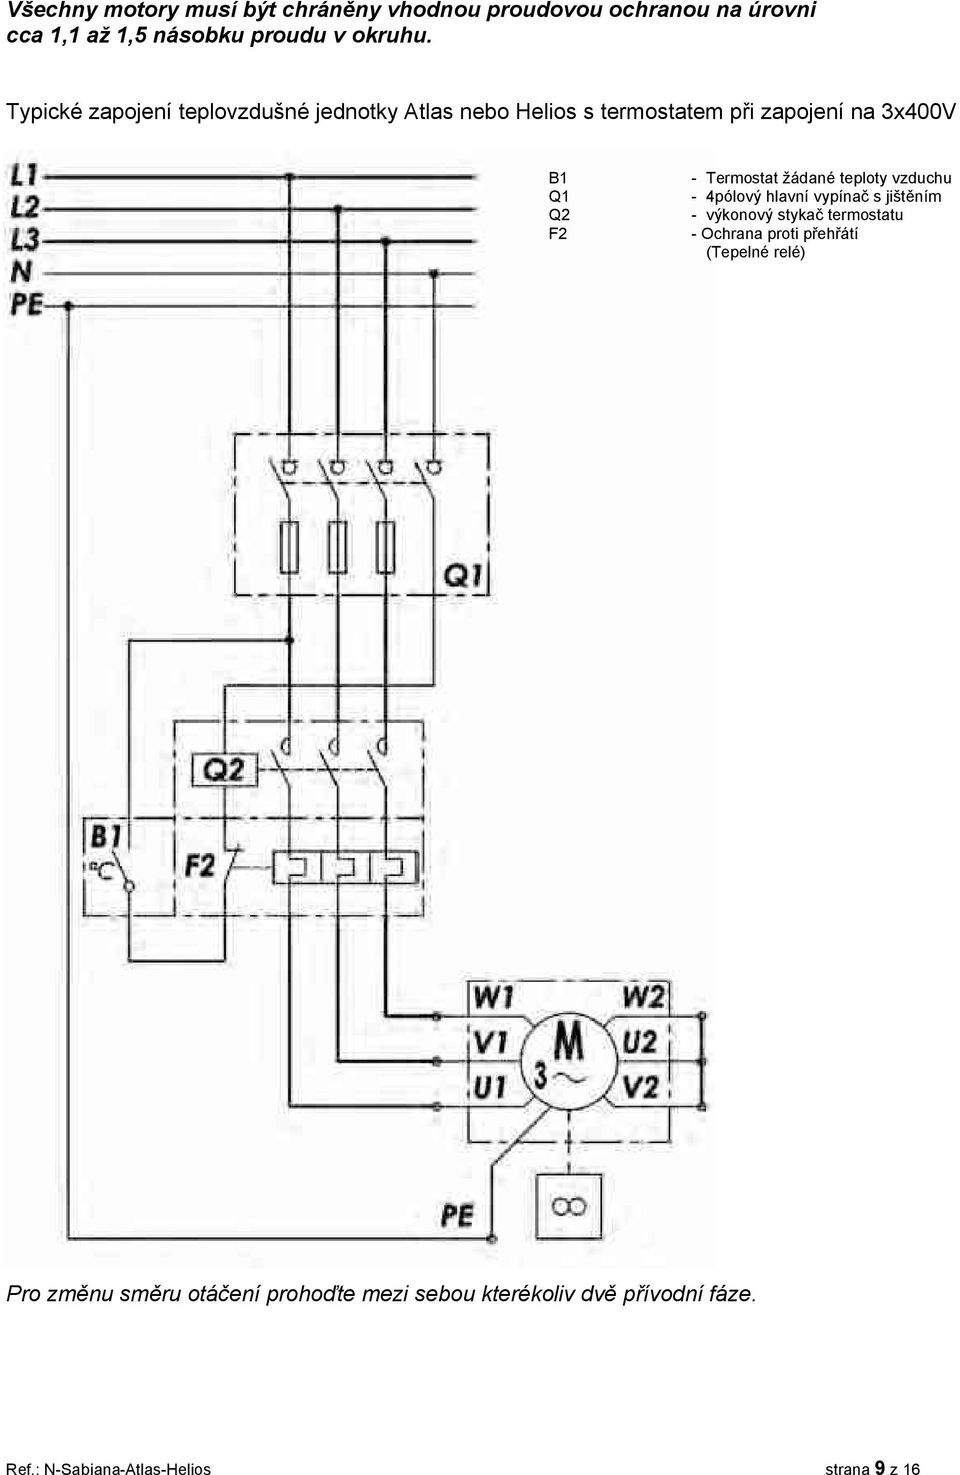 Termostat žádané teploty vzduchu - 4pólový hlavní vypínač s jištěním - výkonový stykač termostatu - Ochrana